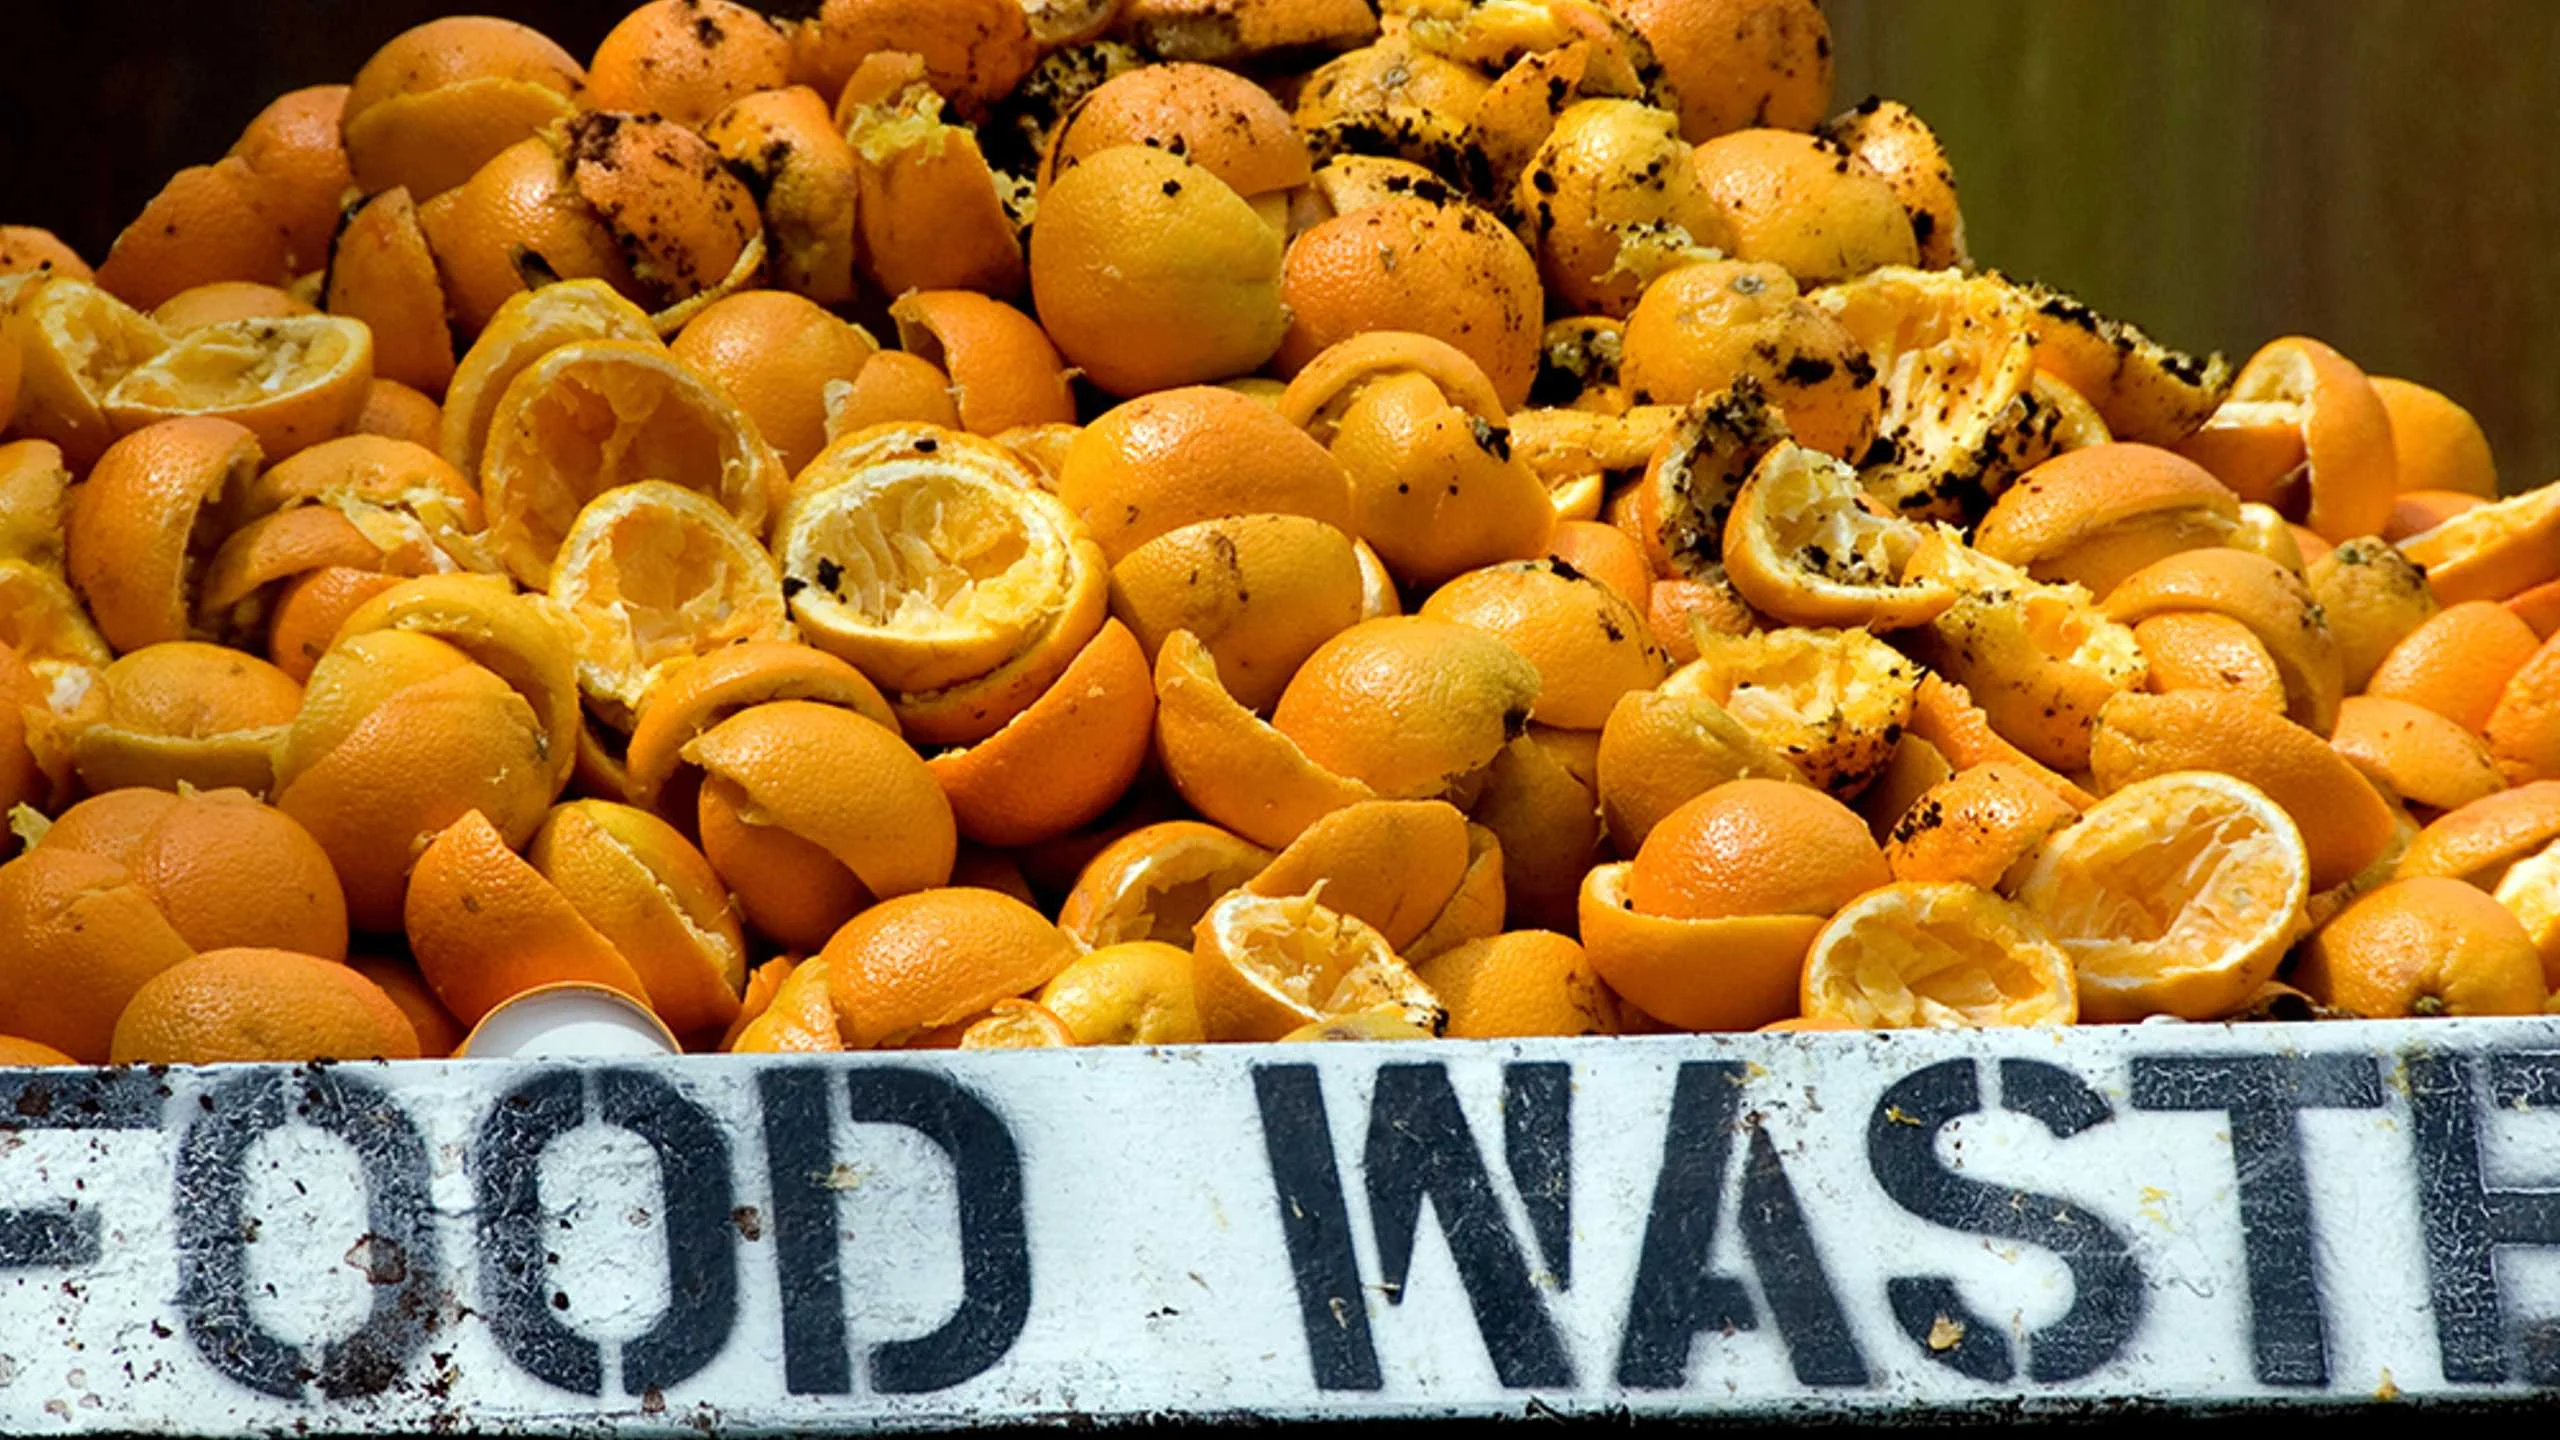 Este proyecto ha descubierto cómo convertir nuestro desperdicio masivo de alimentos en energía utilizable